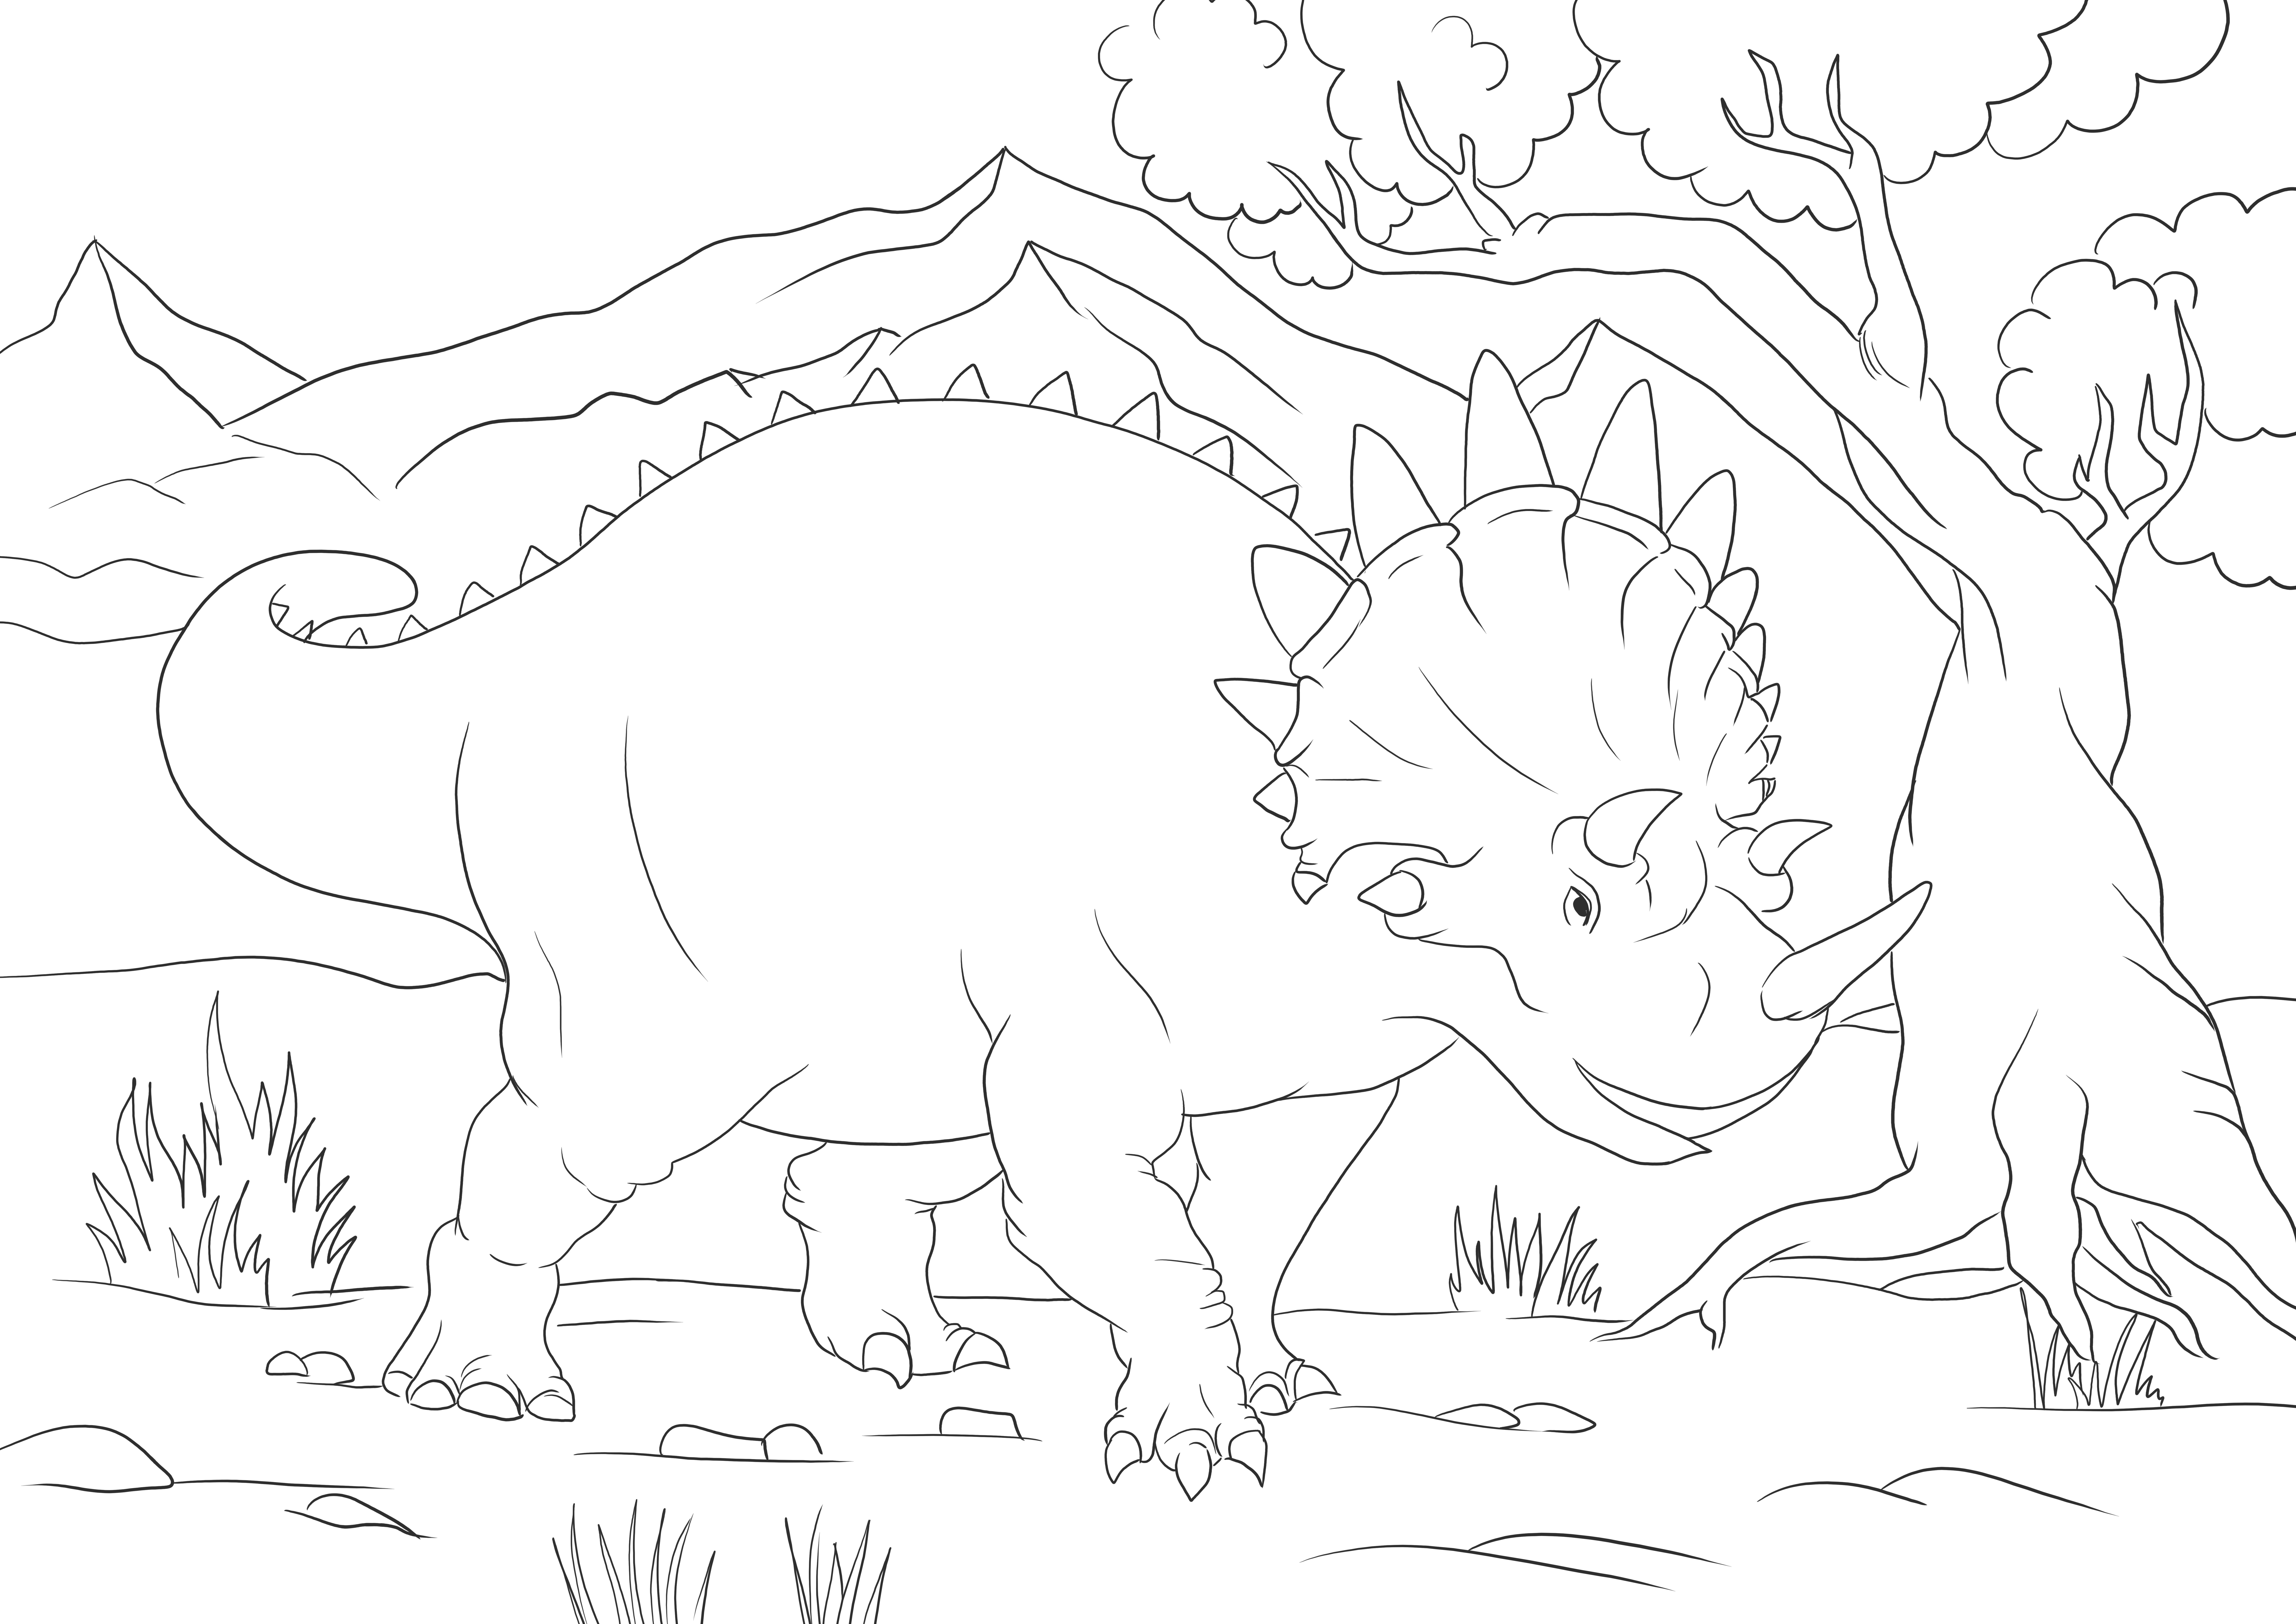 Çocukların renklendirmesi için Big Triceratops resmi ücretsiz yazdırma veya indirme